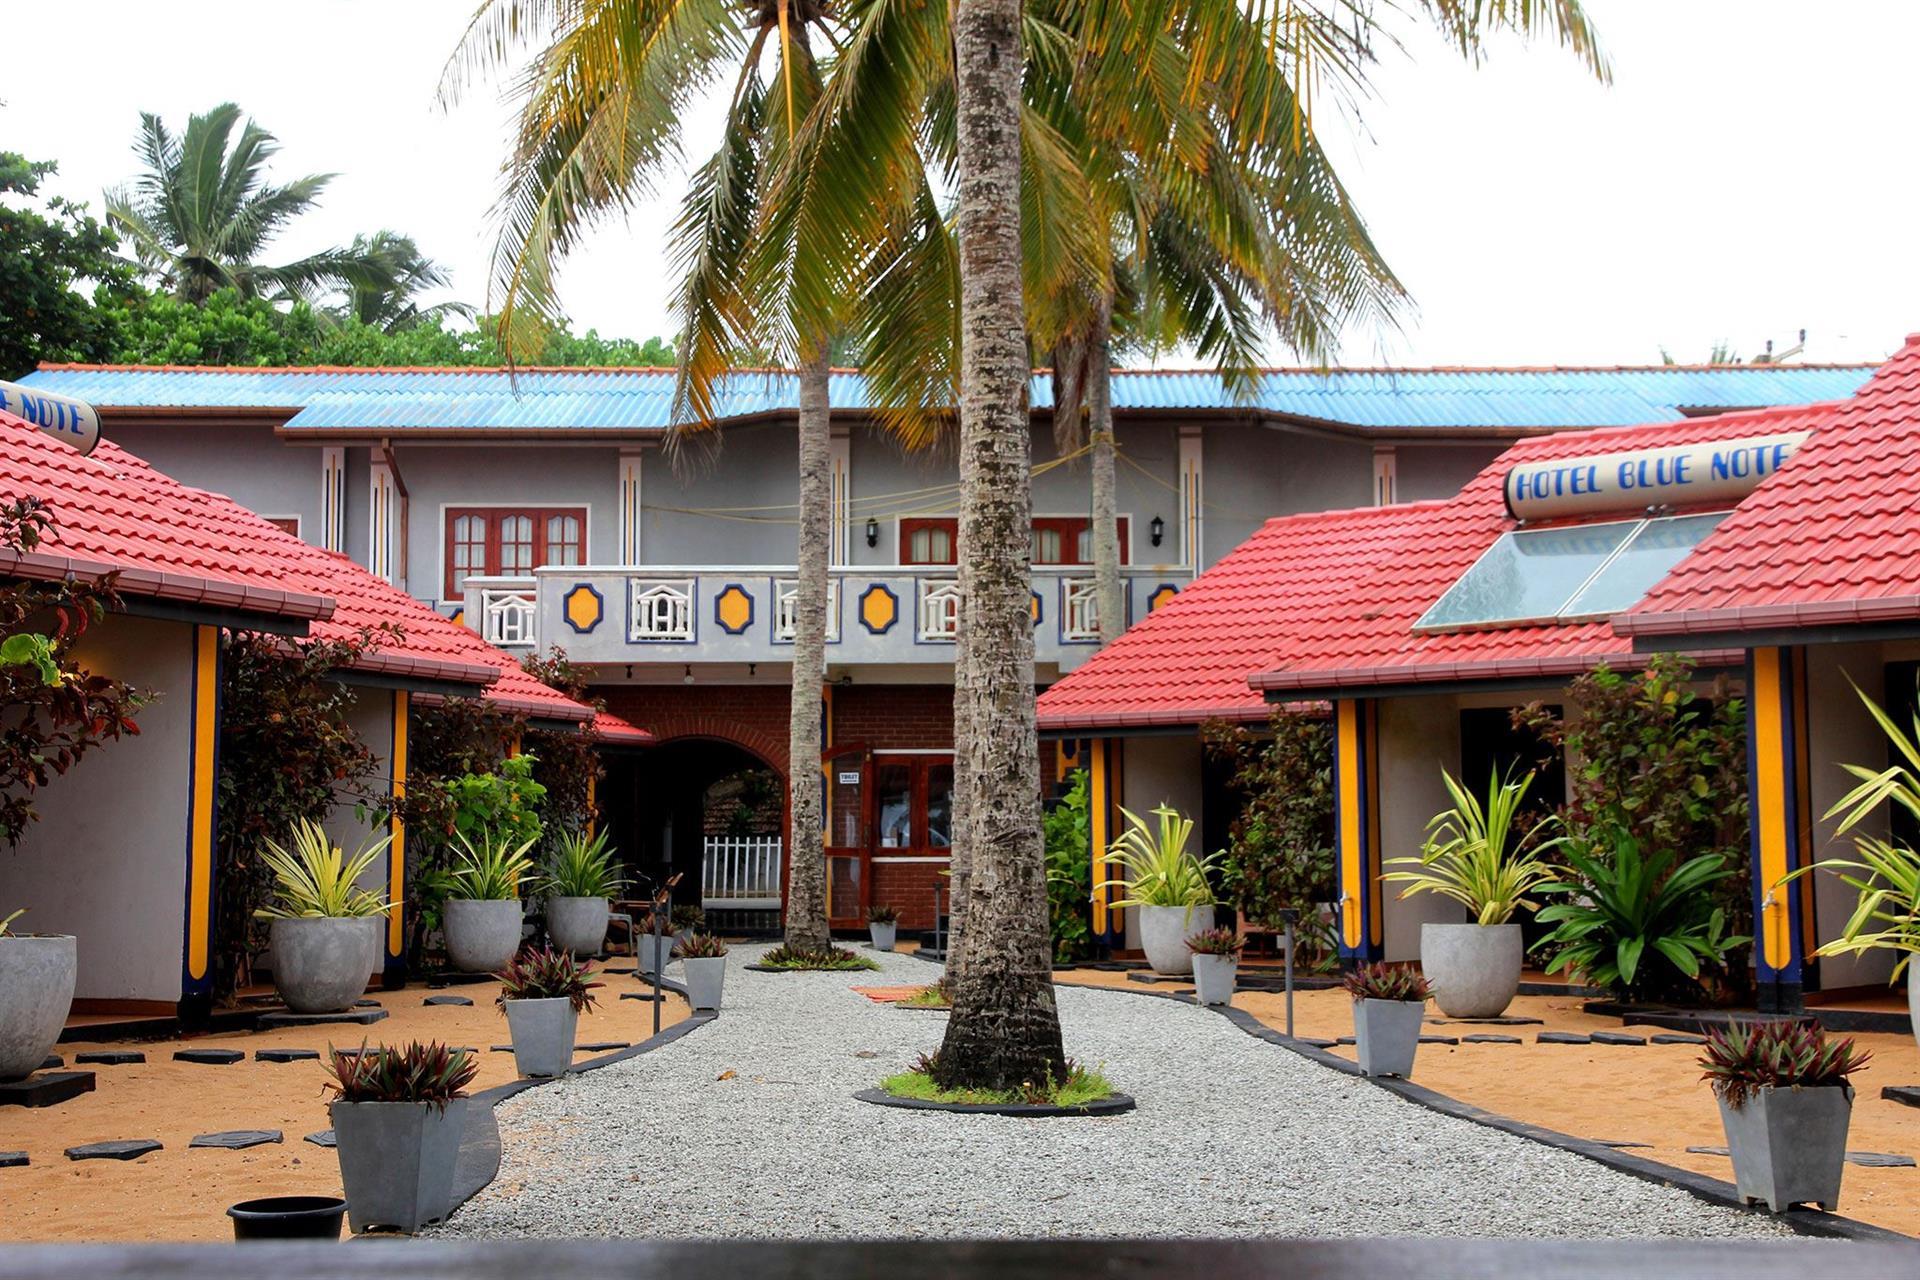 Blue Note Cabanas & Restaurant 2*